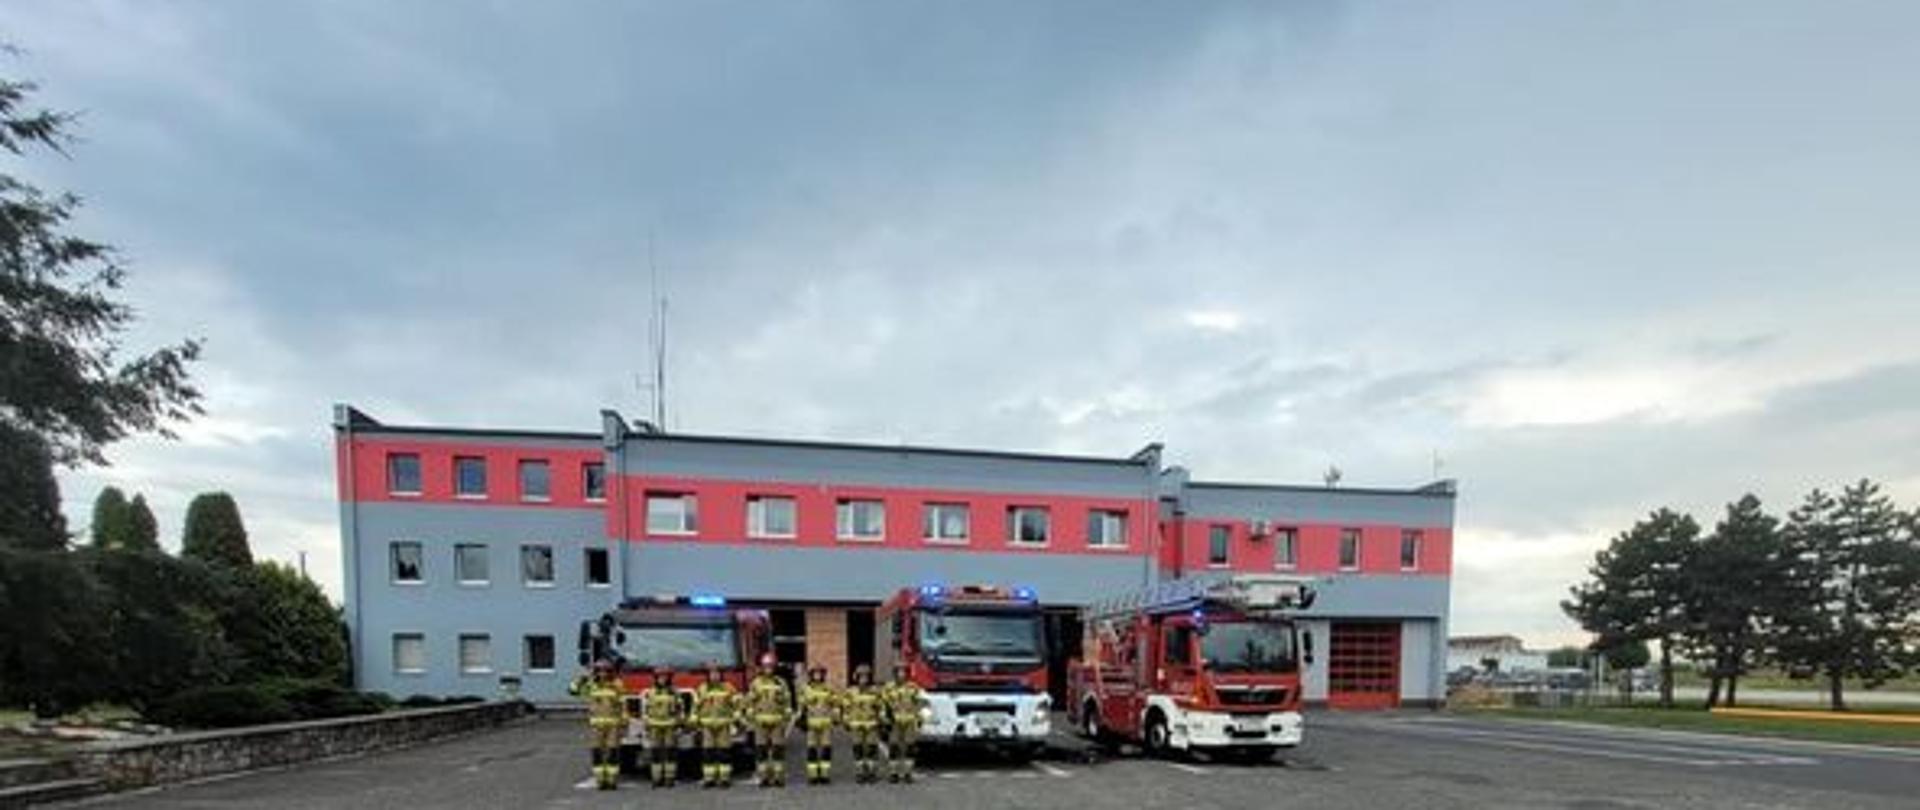 Na zdjęciu znajdują się samochody strażackie ustawione przed budynkiem komendy oraz strażacy oddający honor